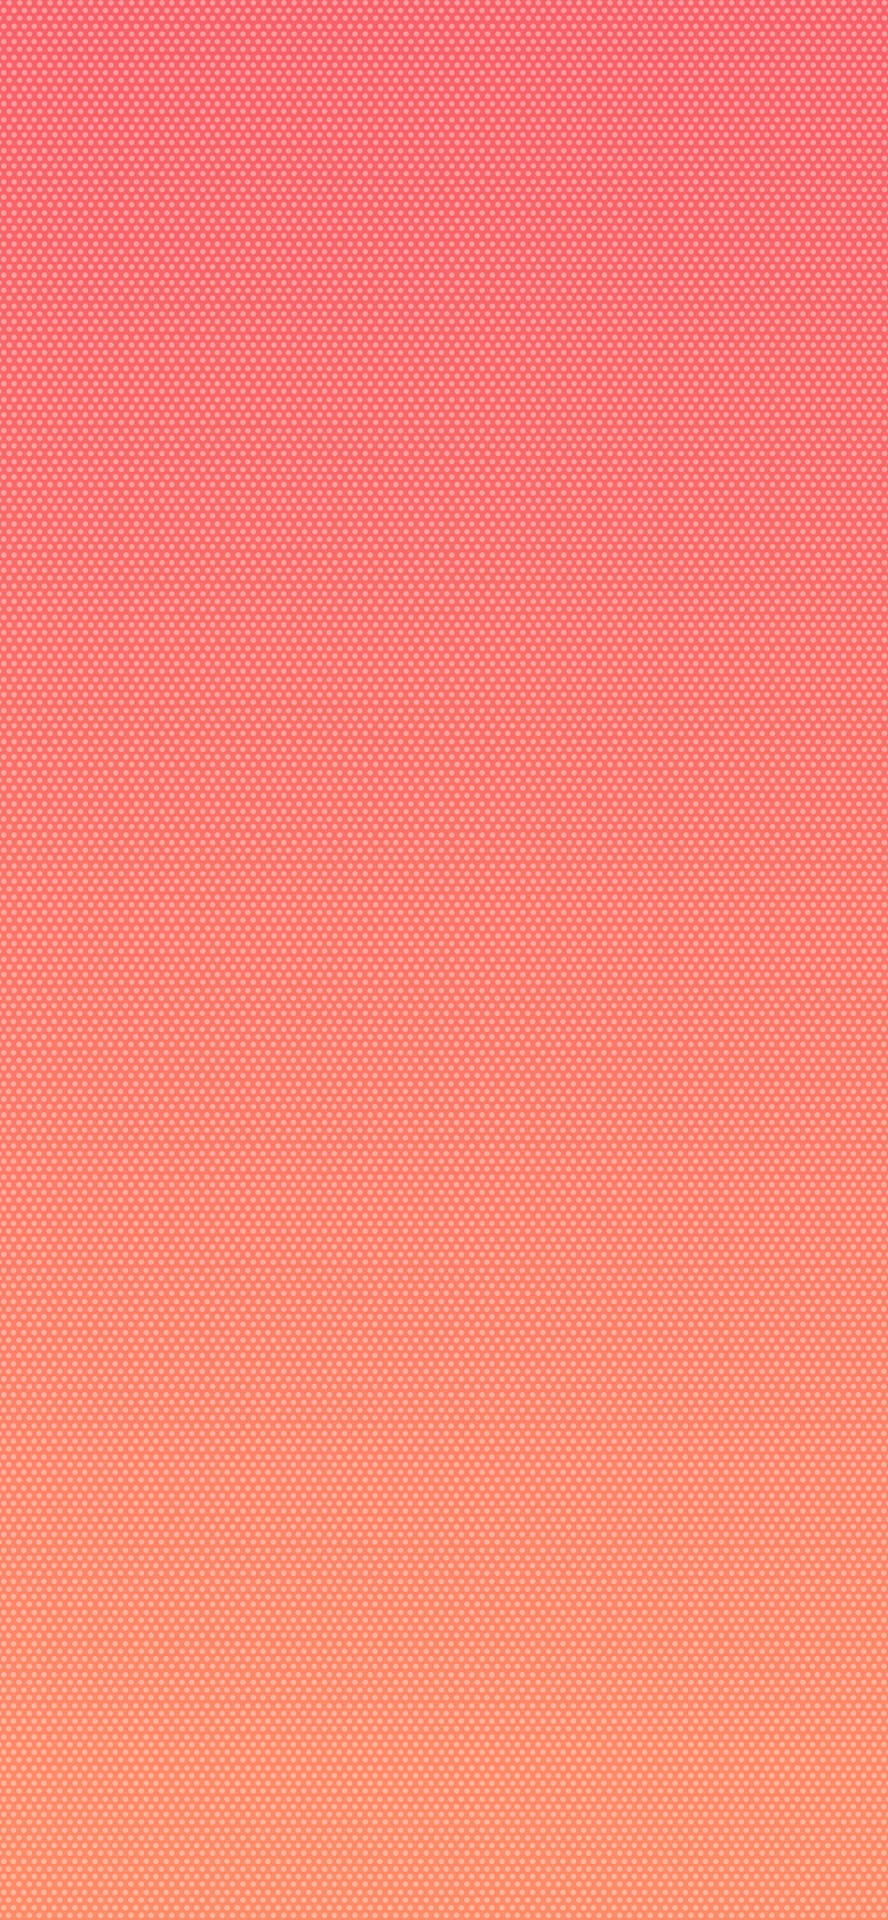 Unfondo Rosa Y Naranja Con Un Patrón De Puntos. Fondo de pantalla